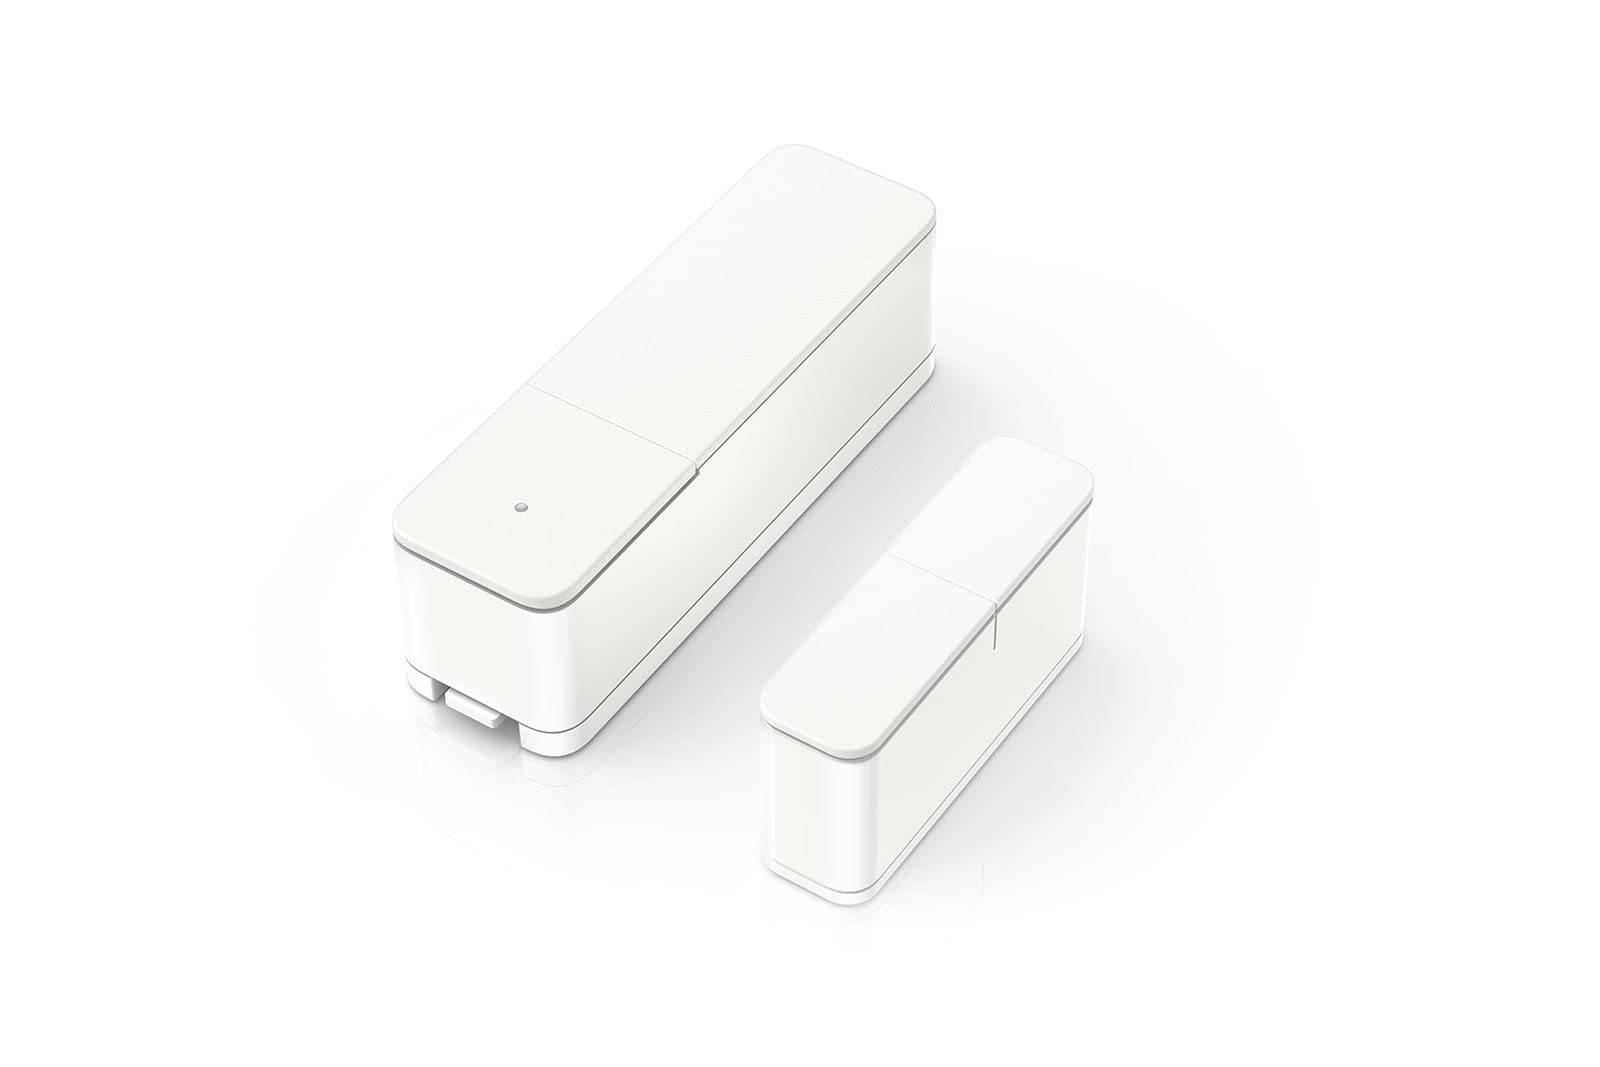 Bosch Smart Home Tür-/Fensterkontakt II Plus, Einbruchschutz mit smartem Sensor zur Erschütterungserkennung, kompatibel mit Amazon Alexa und Google Assistant, weiß